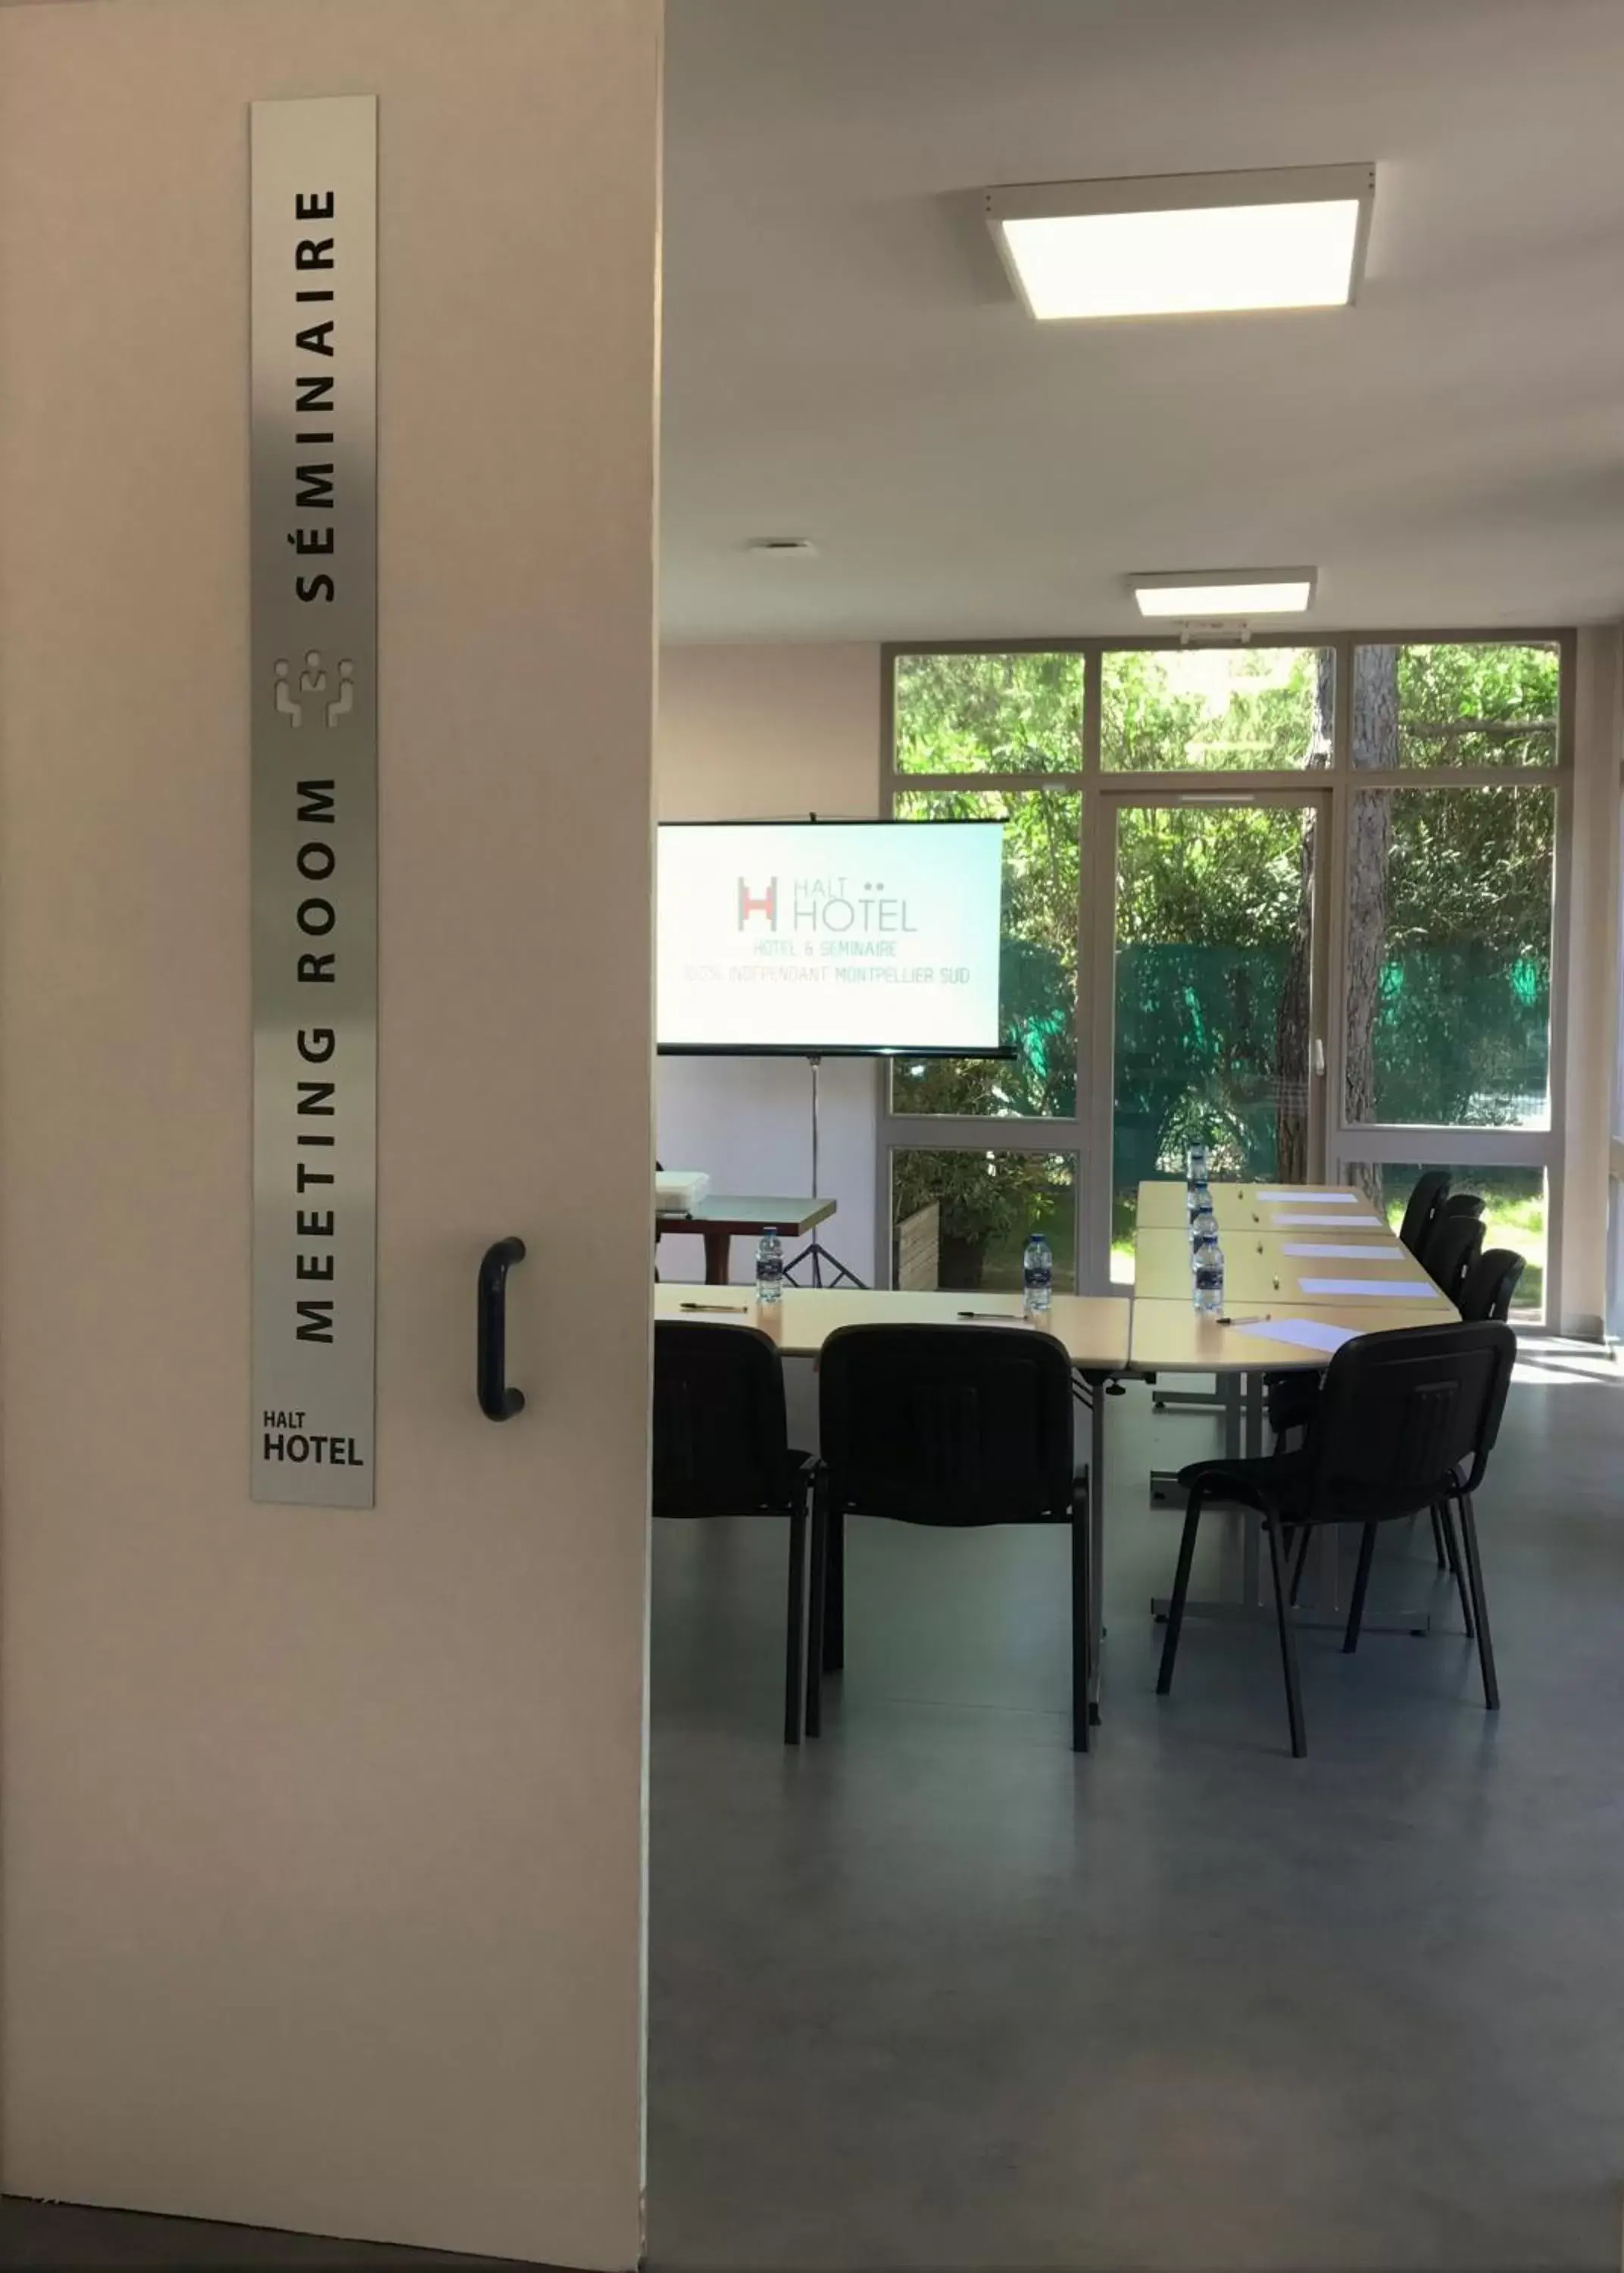 Meeting/conference room in HALT HOTEL - Choisissez l'Hôtellerie Indépendante